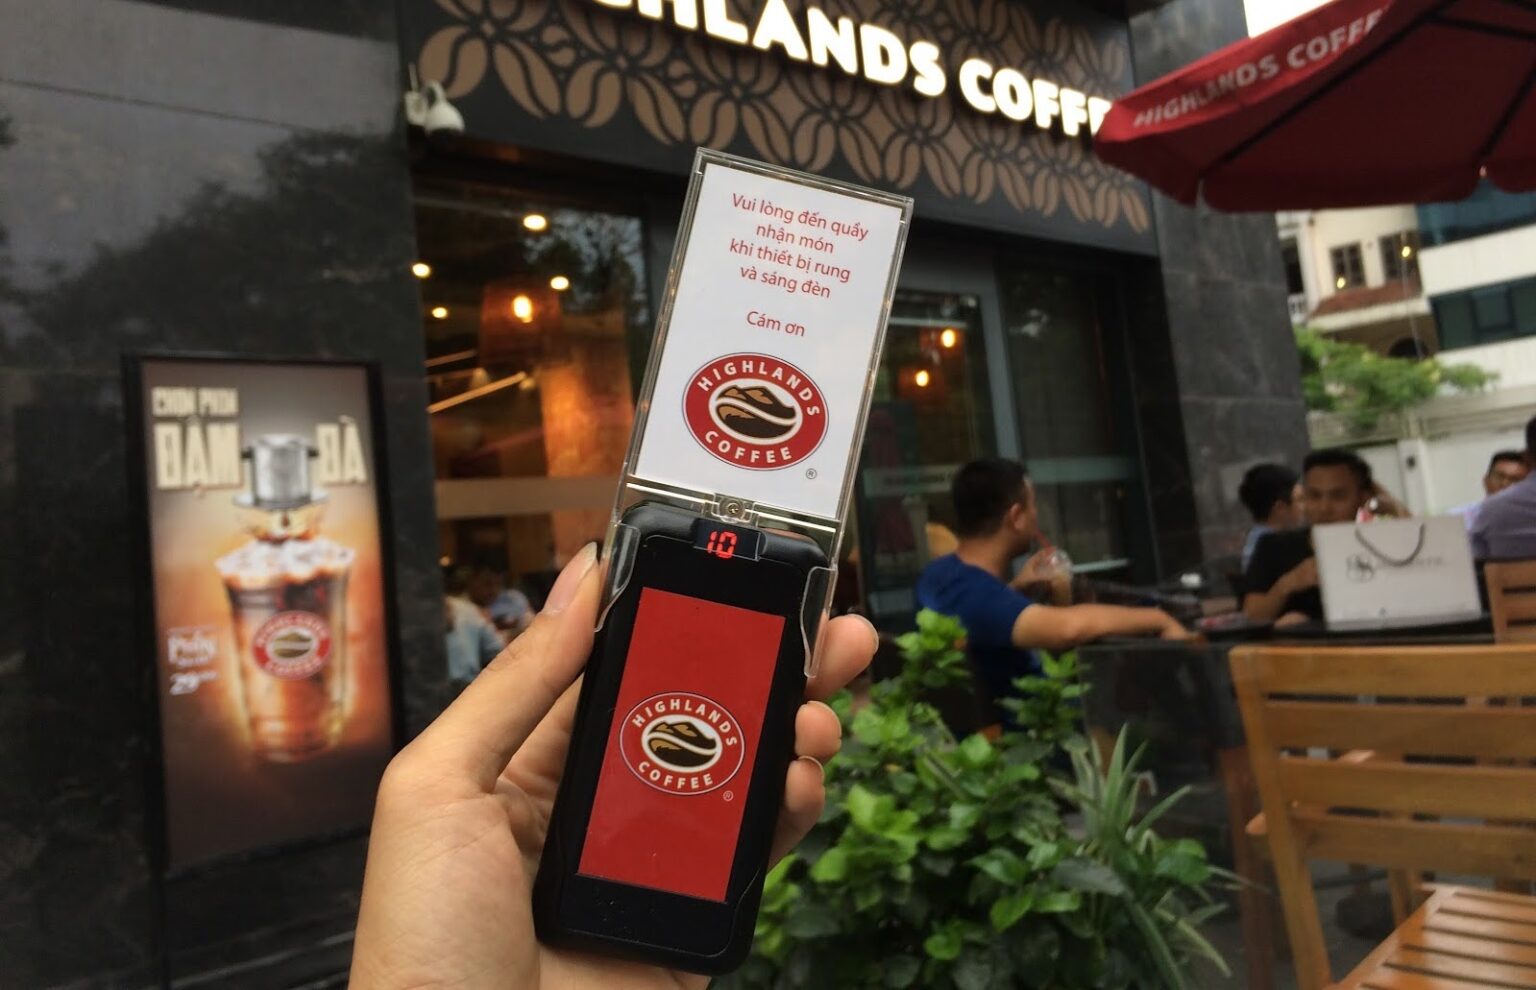 Phân tích chiến lược Marketing của Highlands Coffee – Thương hiệu cà phê nổi tiếng